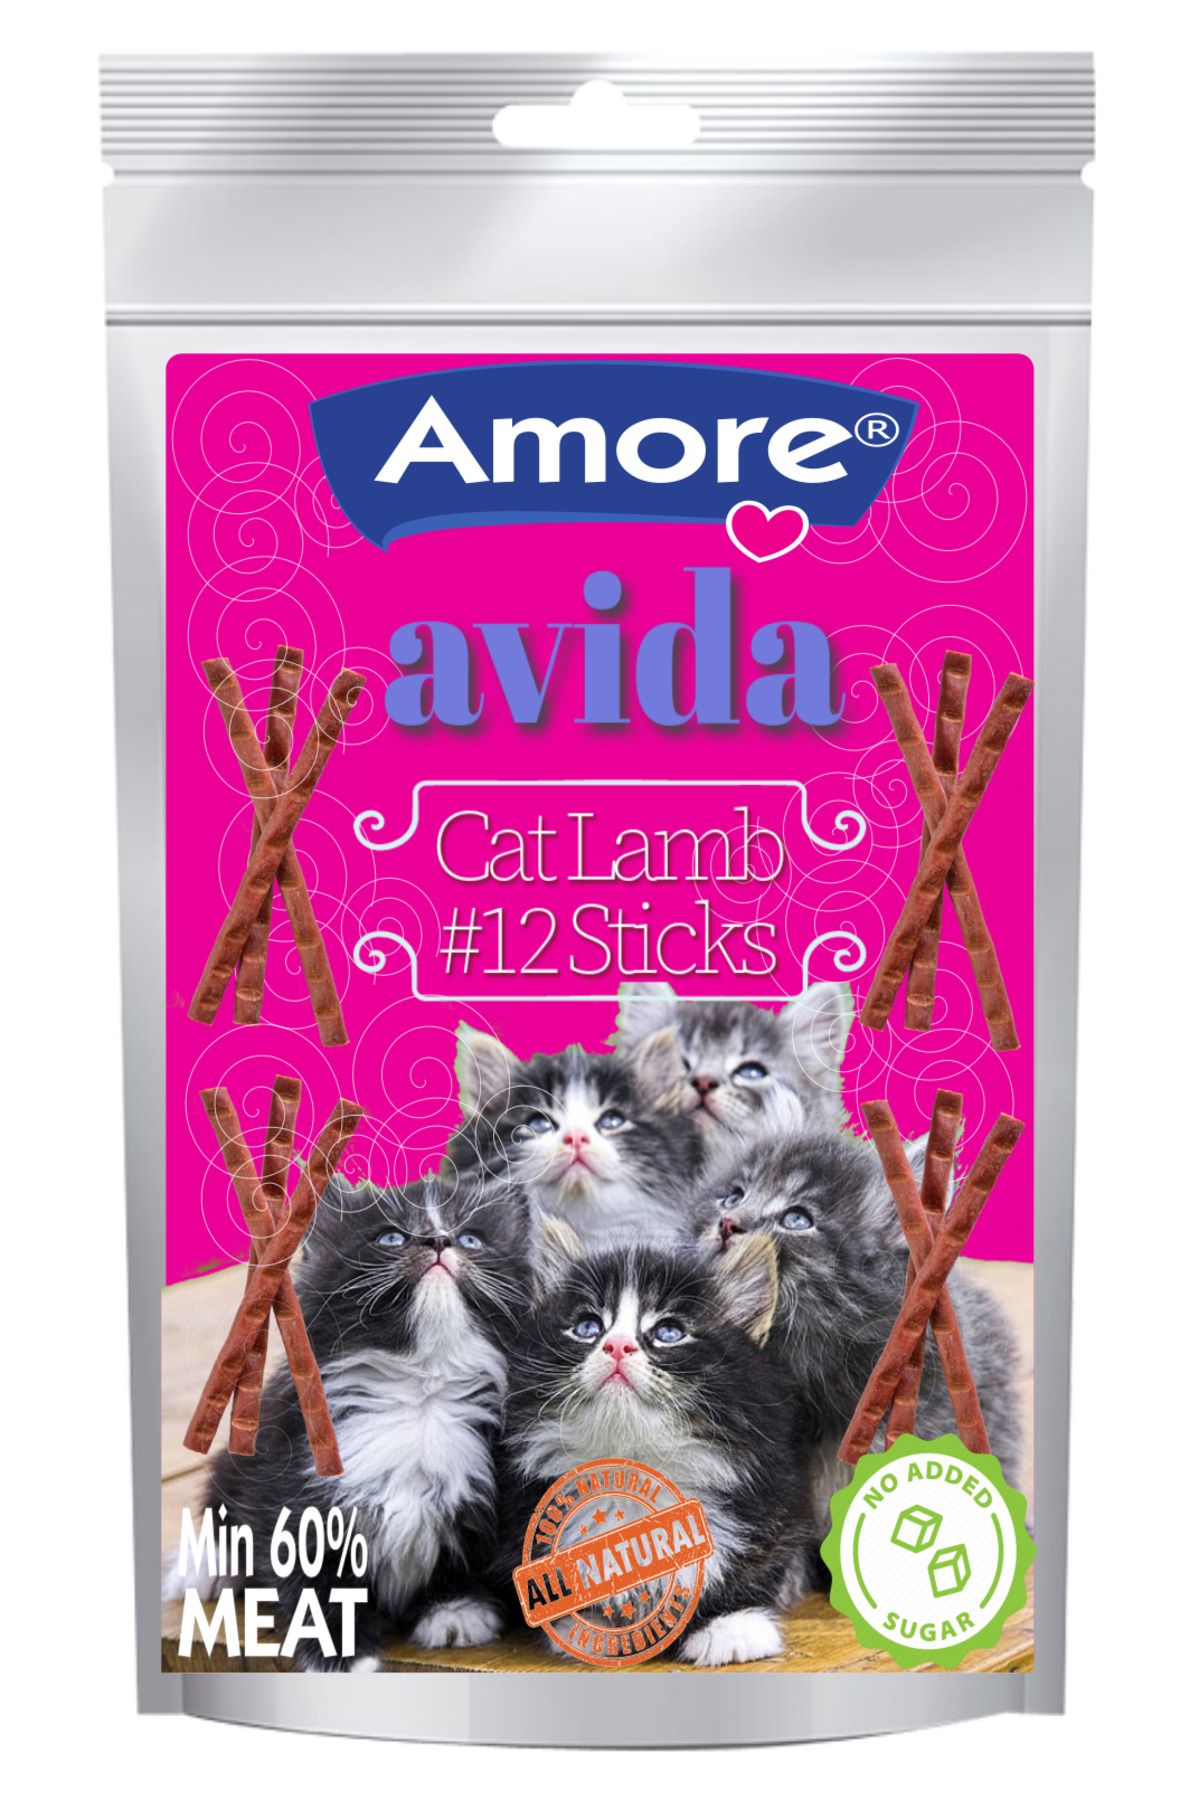 Amore Avida 12li Kuzu, New Story Salmon Sticks 3 paket 3x5gr Kedi Odul Cubuklari Mamasi, Somonlu Punch